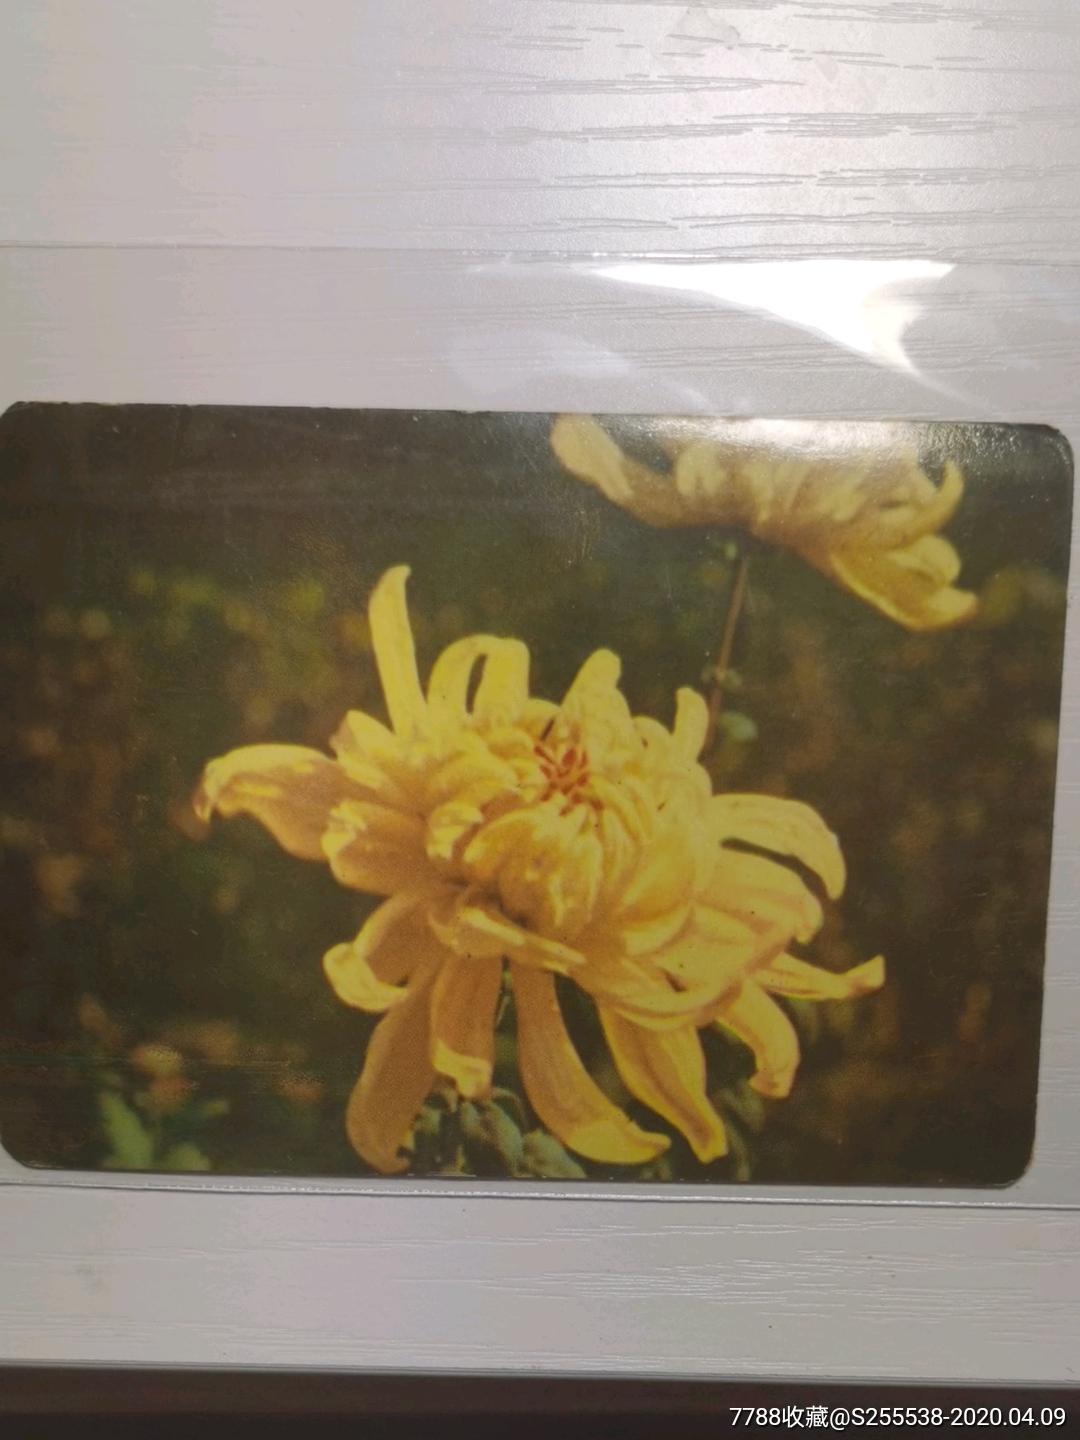 植物记录卡菊花的样子图片